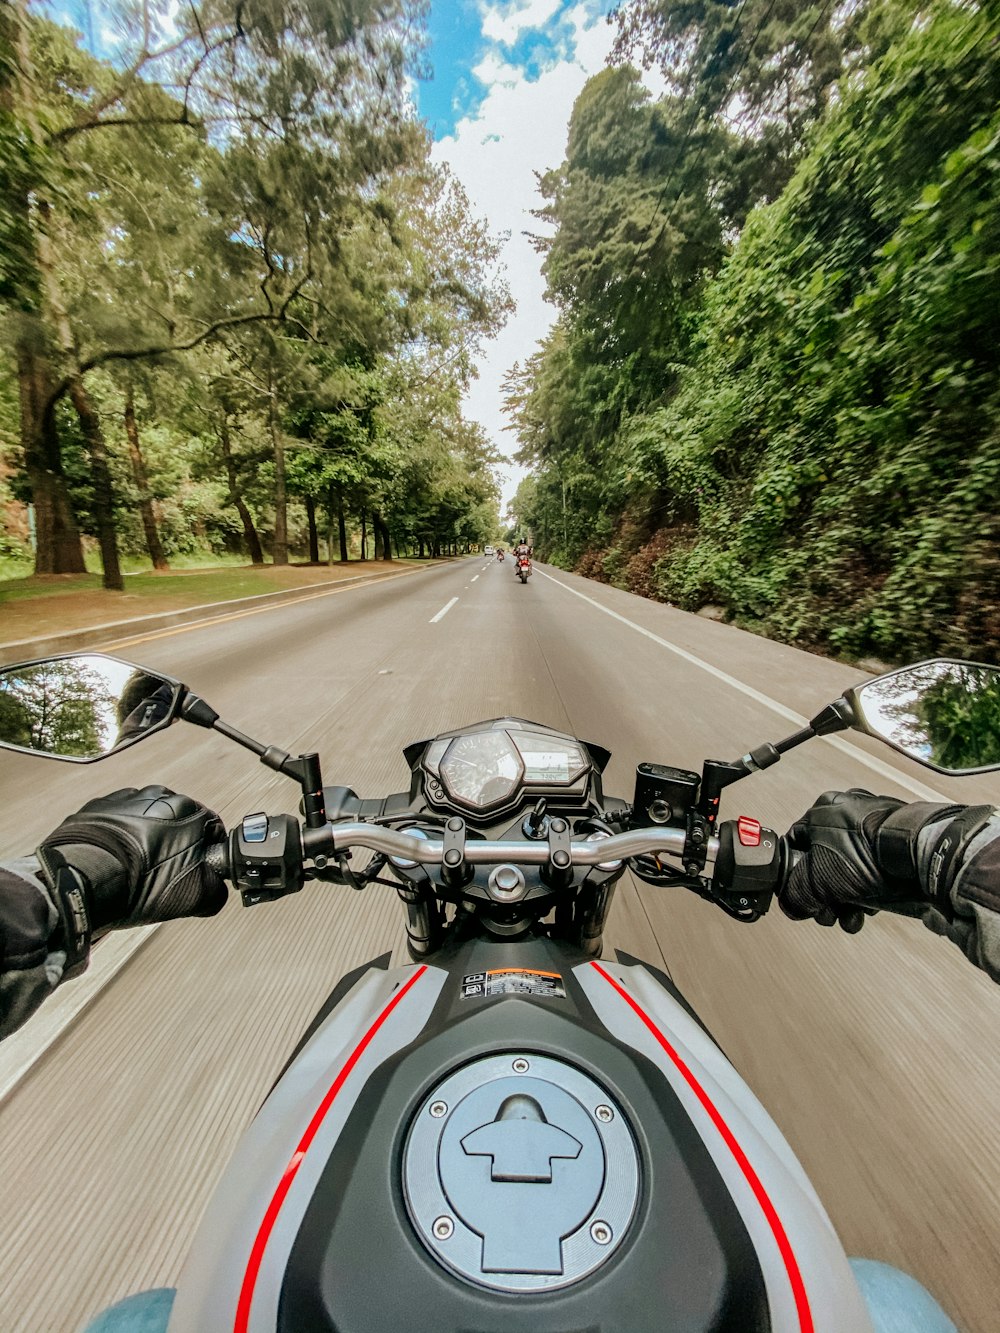 Hombre que monta motocicleta en la carretera durante el día